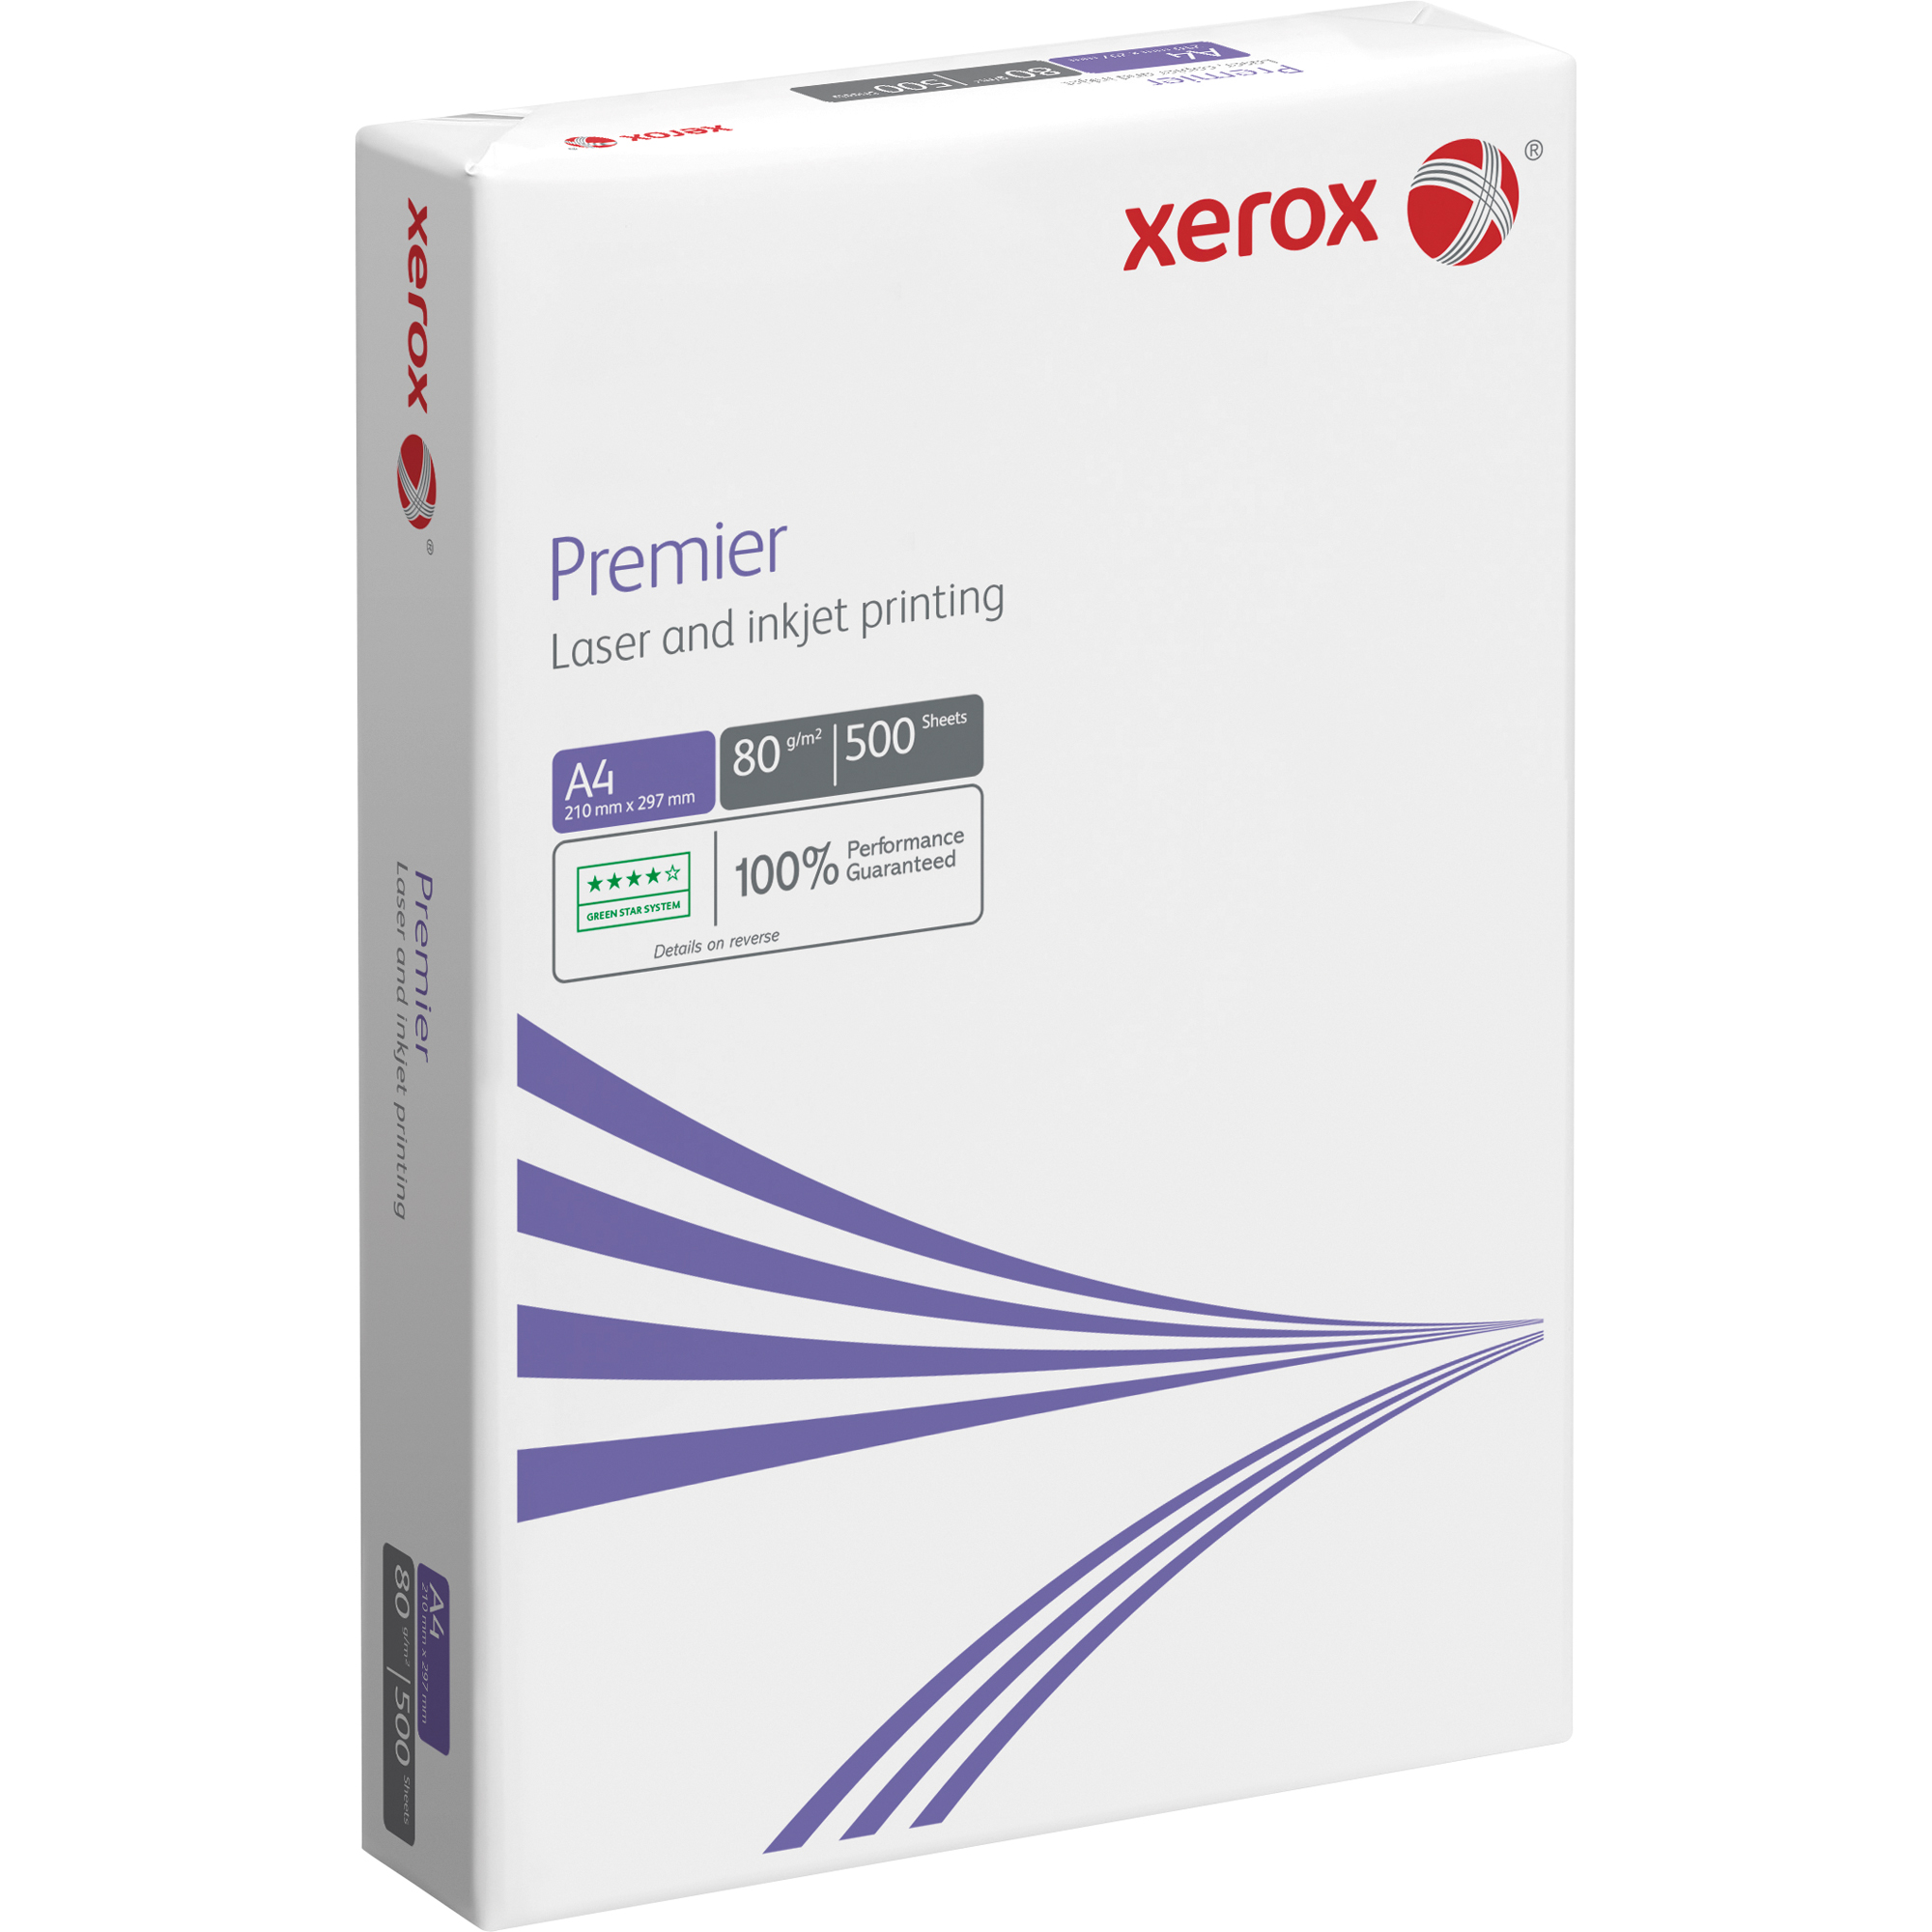 XEROX Kopierpapier PREMIER ECF ws 1 003R91720 Bl/Pack A4 A4 Packung 80g Kopierpapier 500